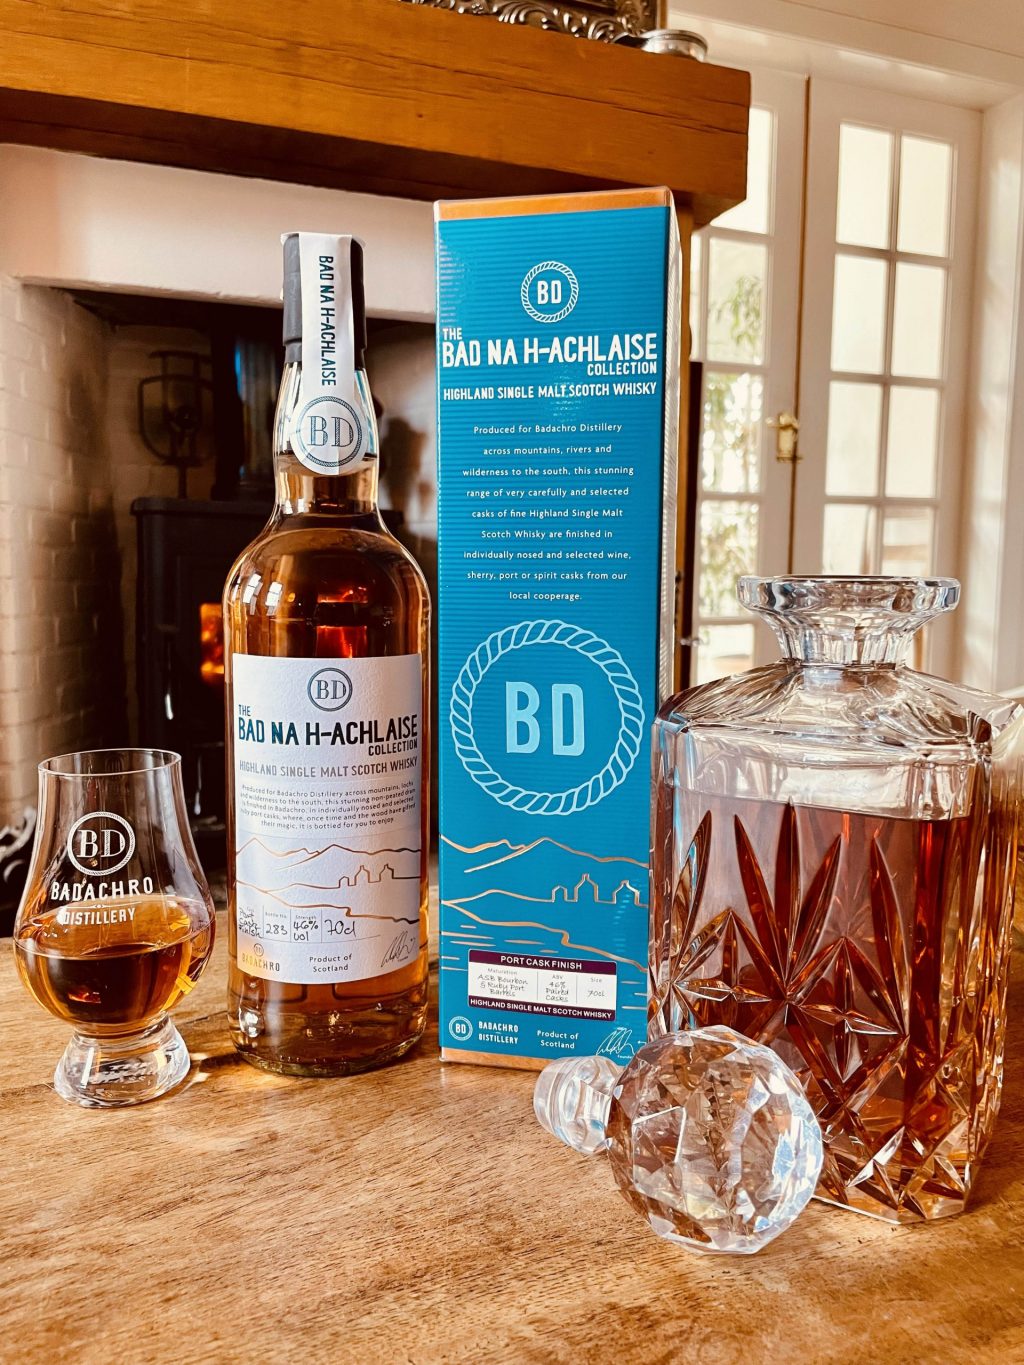 Bad na h-Achlaise Port Cask ist der neueste Single Malt Whisky der Badachro Distillery aus den Highlands.